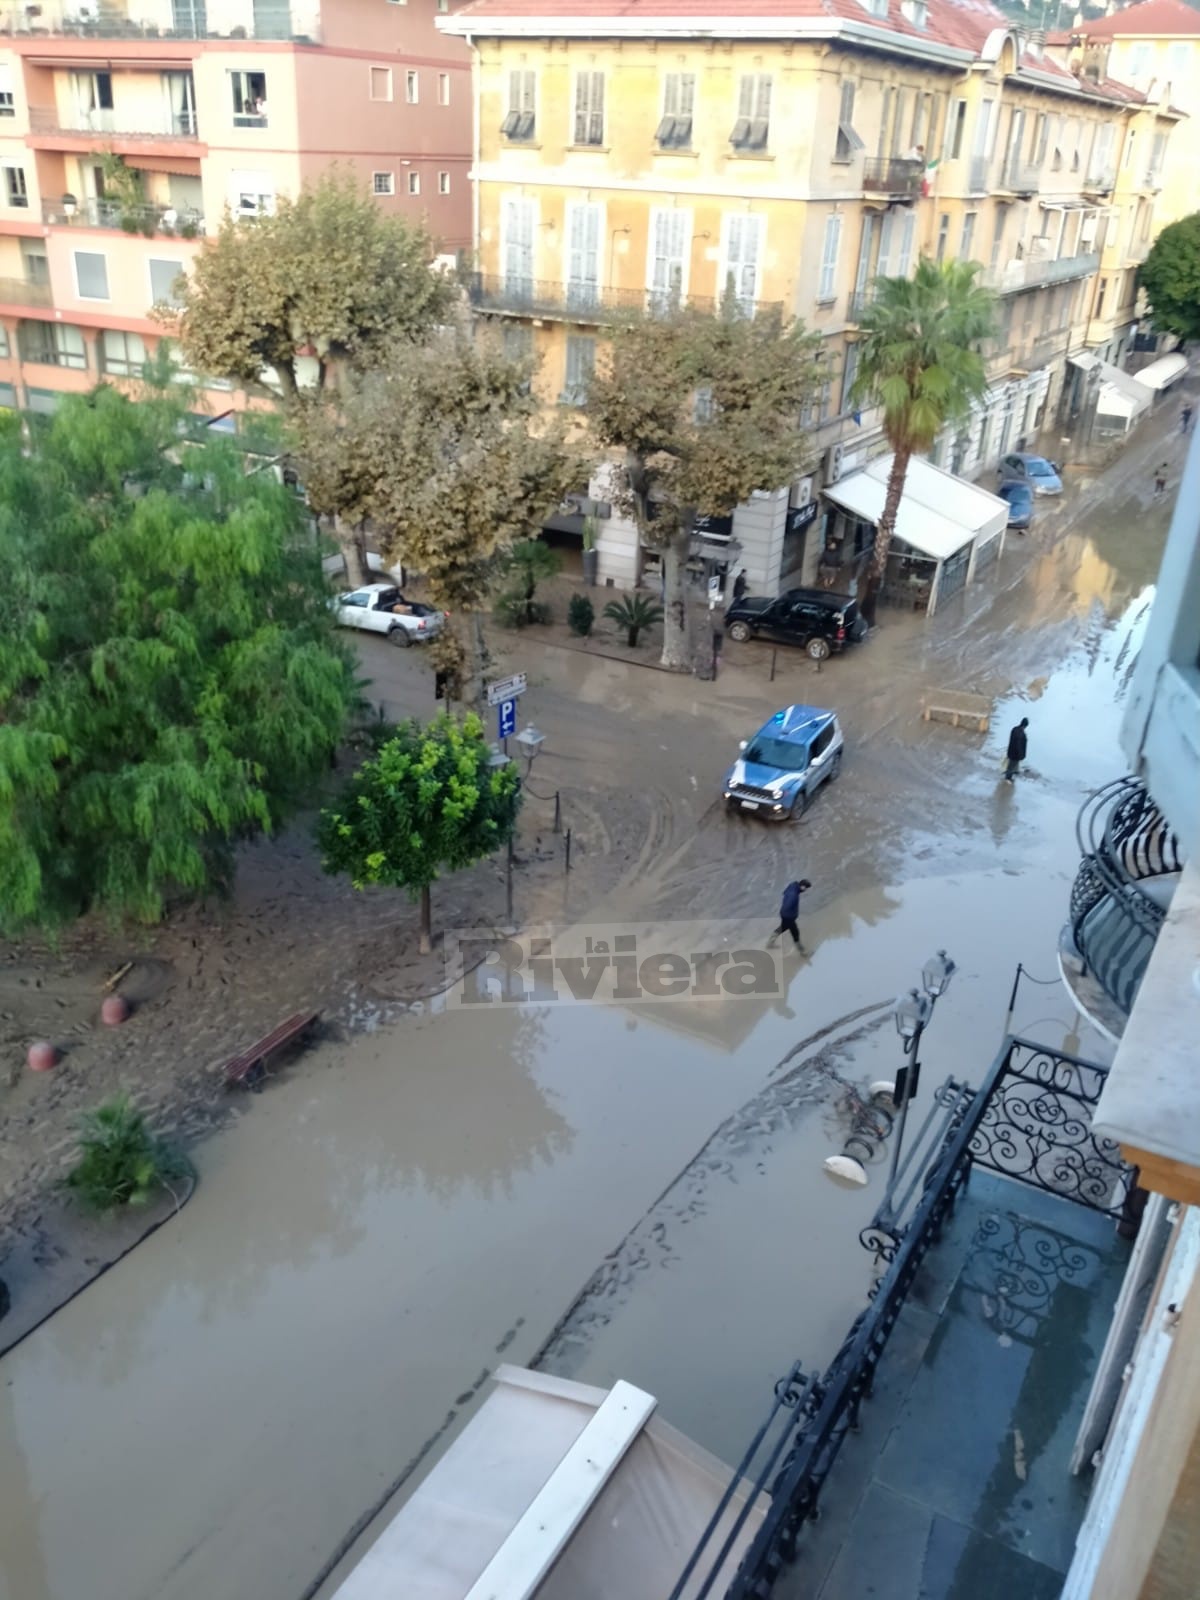 1 Alluvione Ventimiglia il giorno dopo esondazione fiume Roya maltempo 2-3 ottobre 2020 _07